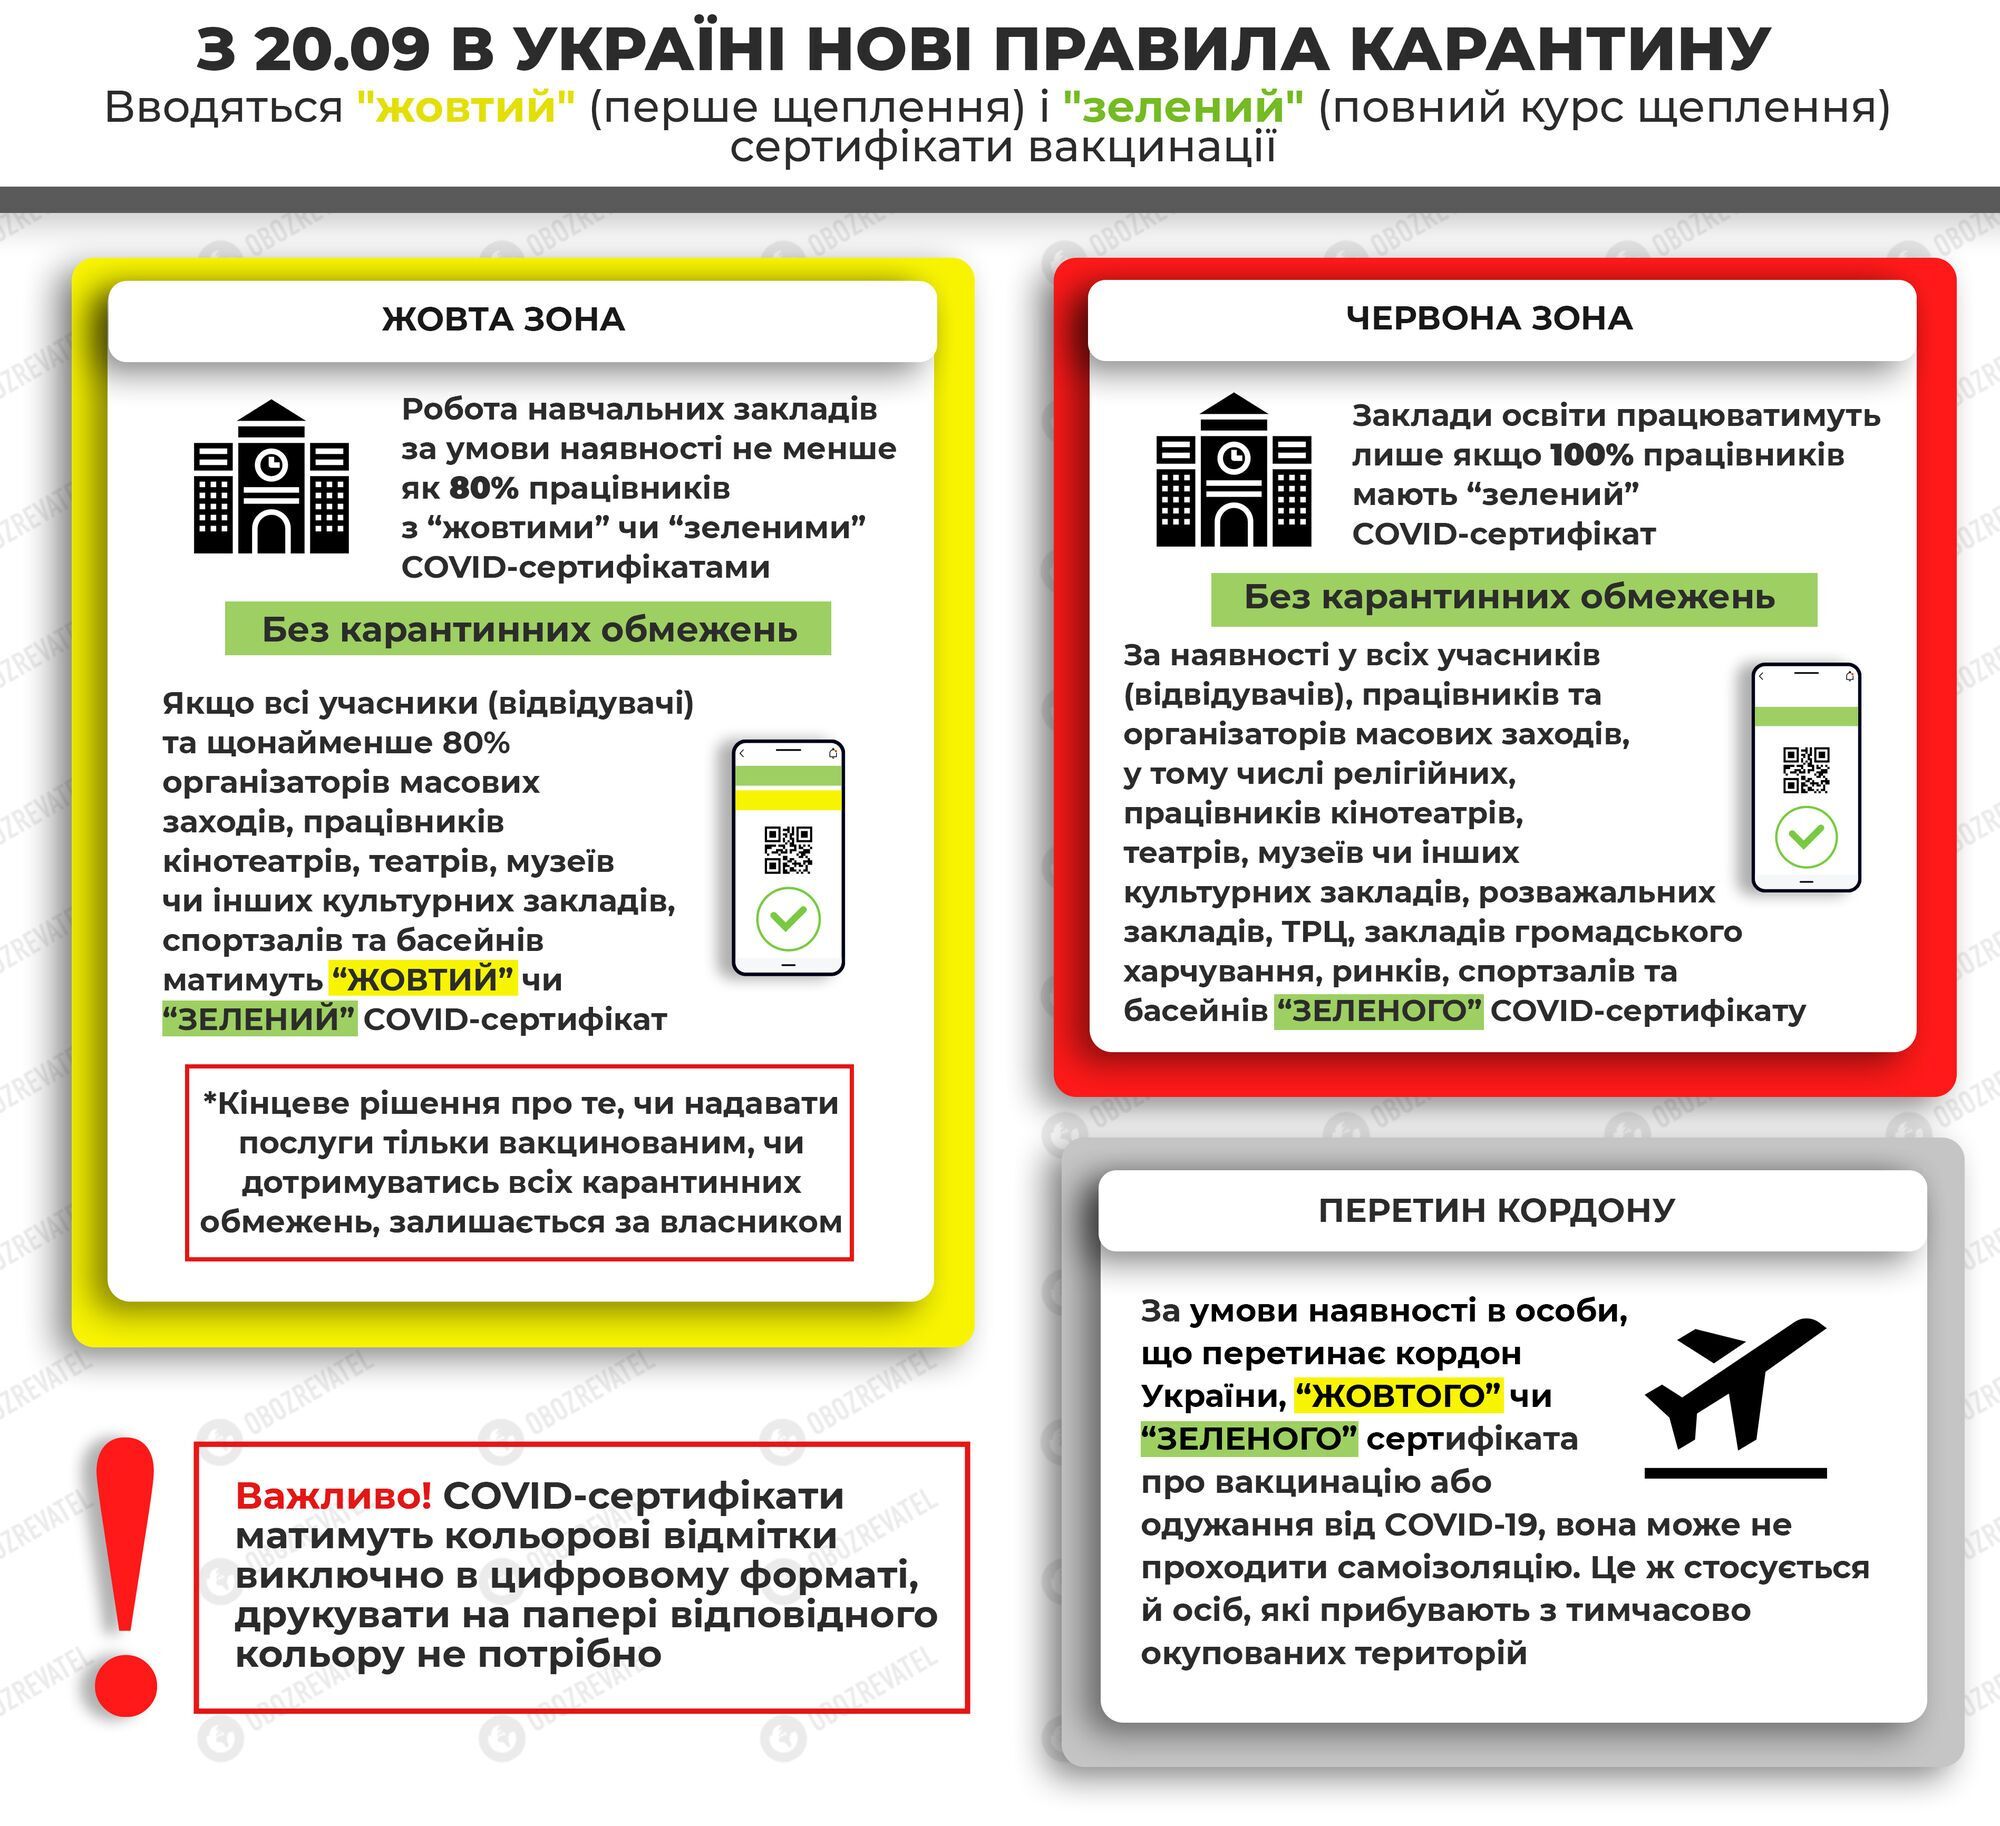 Правила карантина в эпидемических зонах Украины